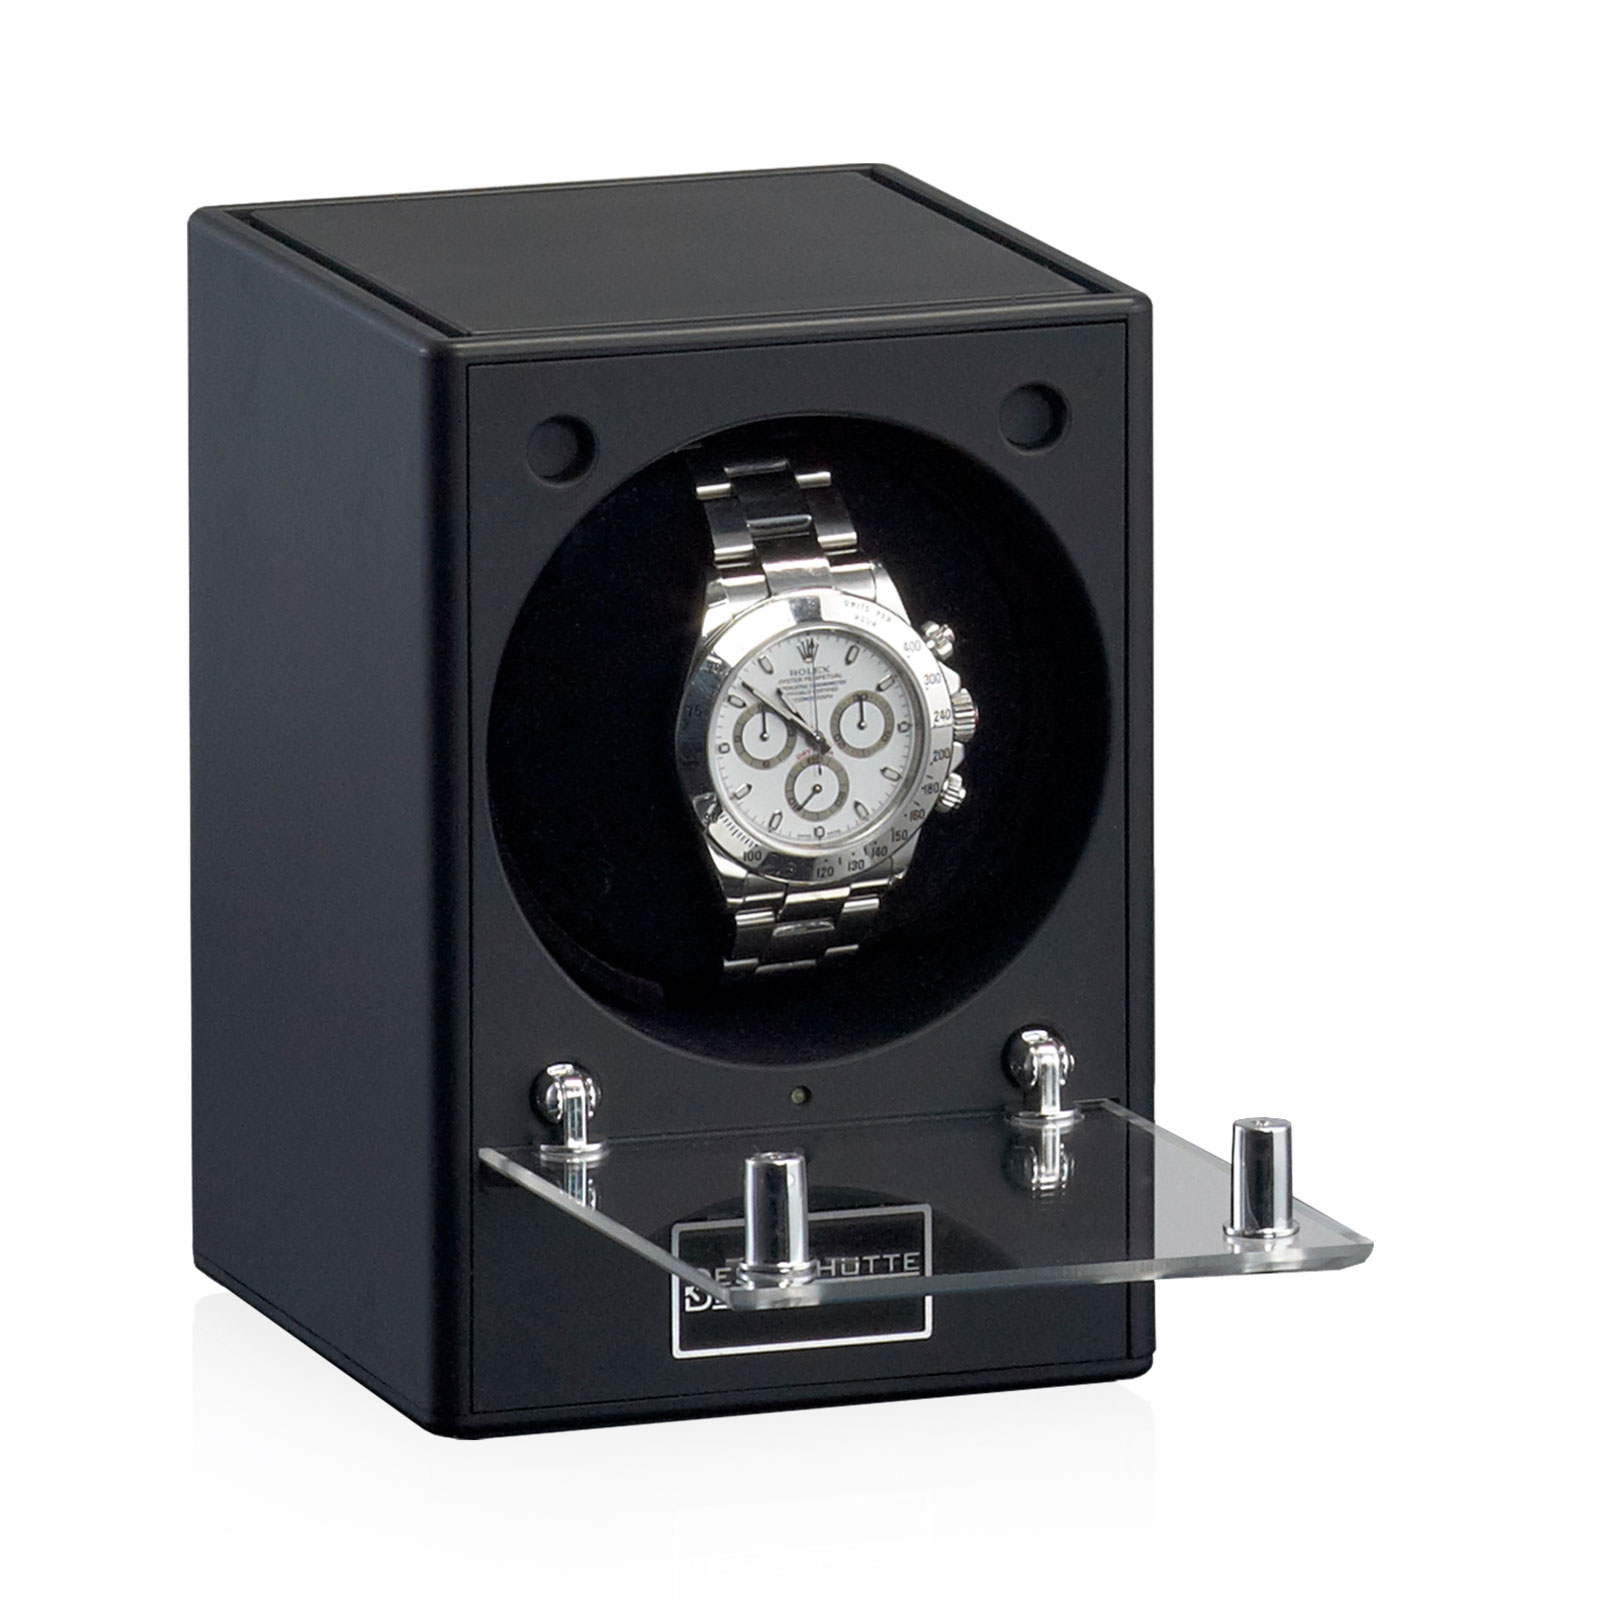 Natahovač automatických hodinek Piccolo na jeden kus 70005/87